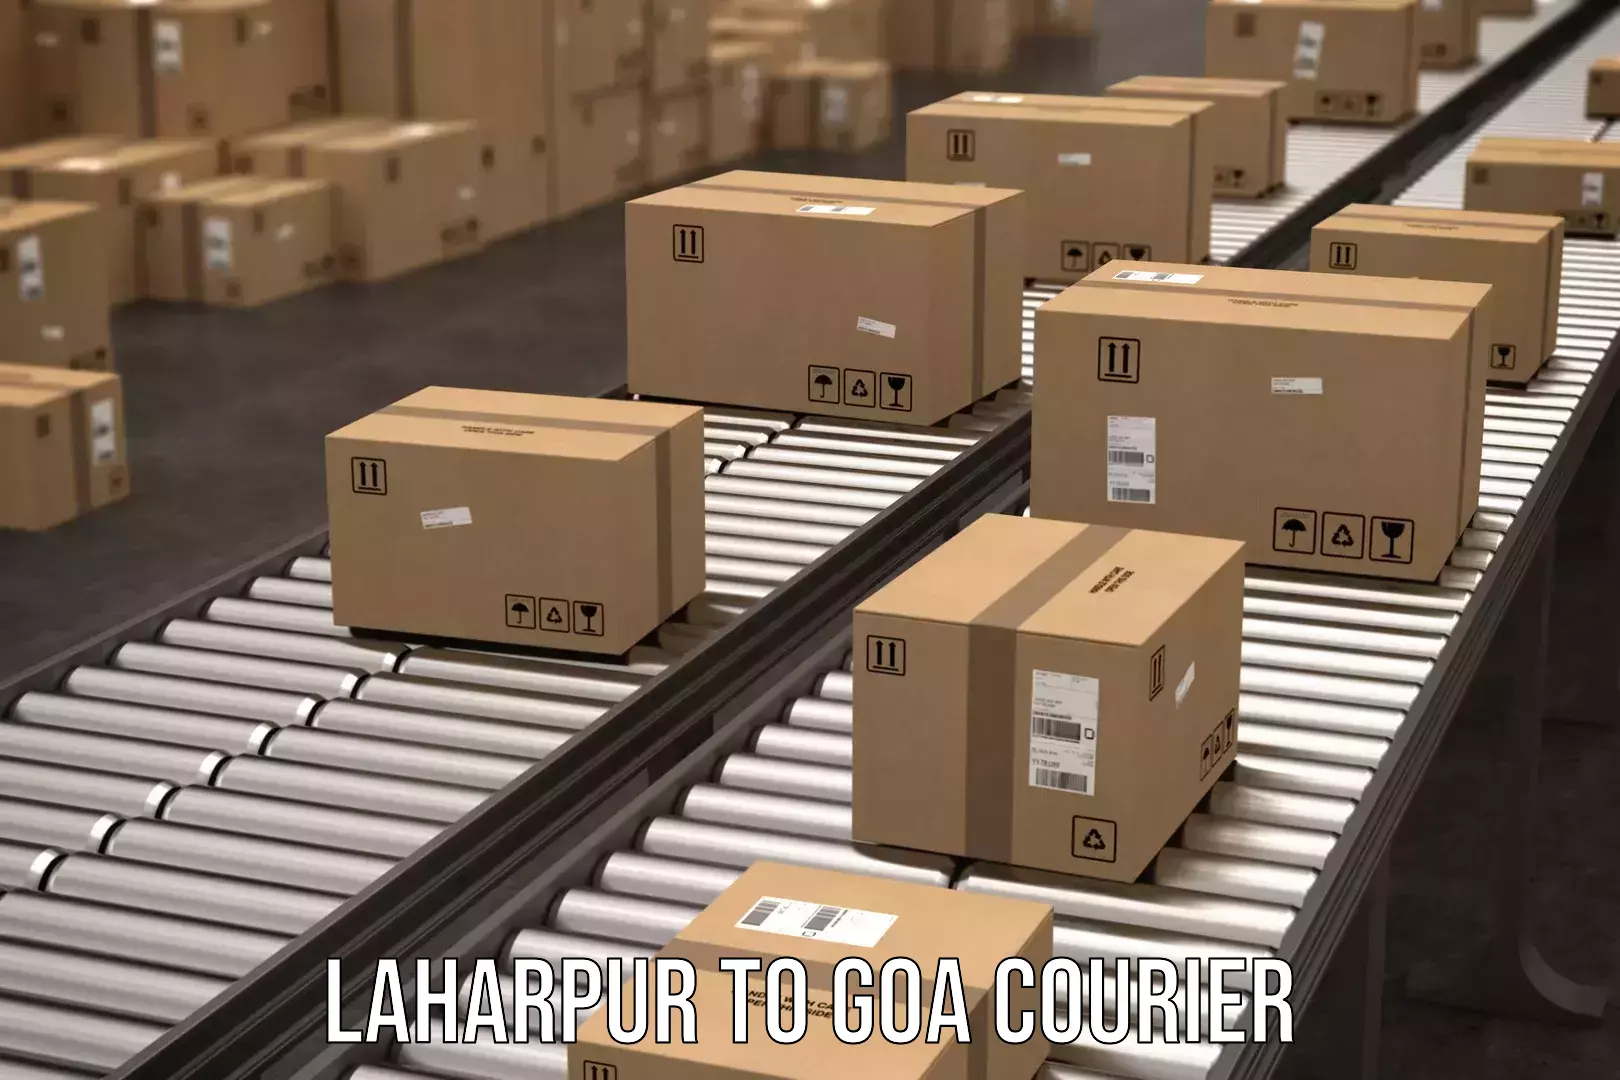 Courier service partnerships Laharpur to Panaji